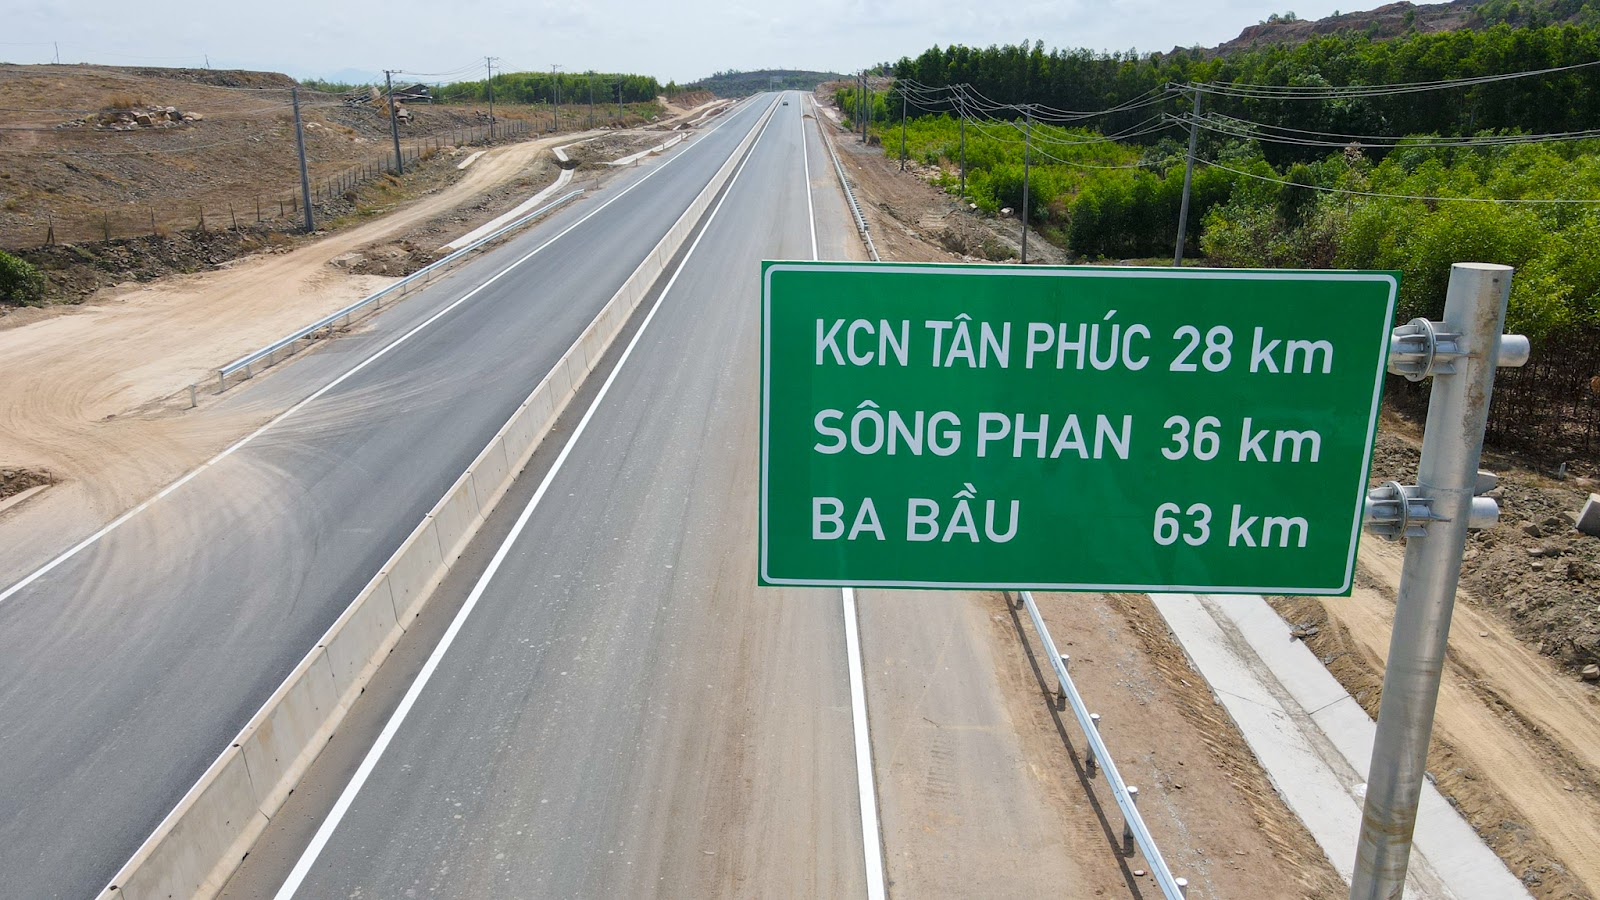 Toàn cảnh cao tốc dài 99 km giúp đi từ TP.HCM đến Phan Thiết trong 2 giờ - Ảnh 4.